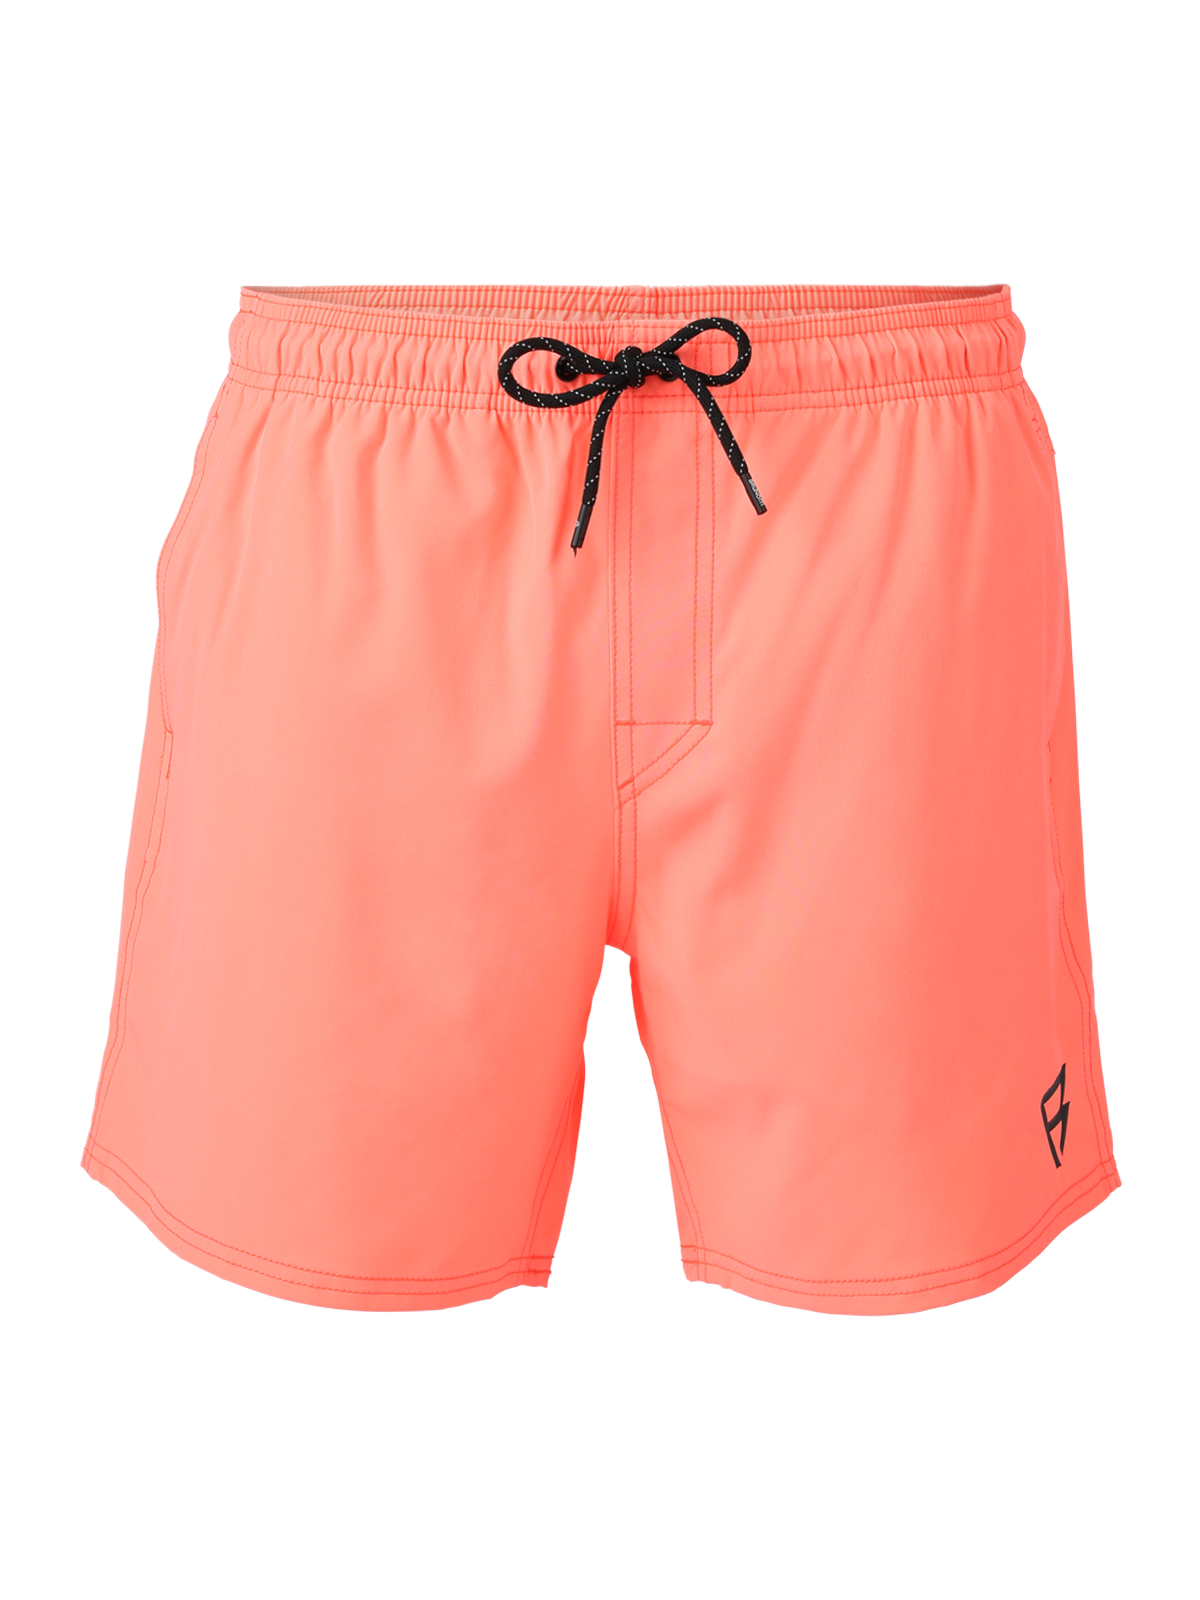 Bru-conic Men Swim Shorts | Flamingo